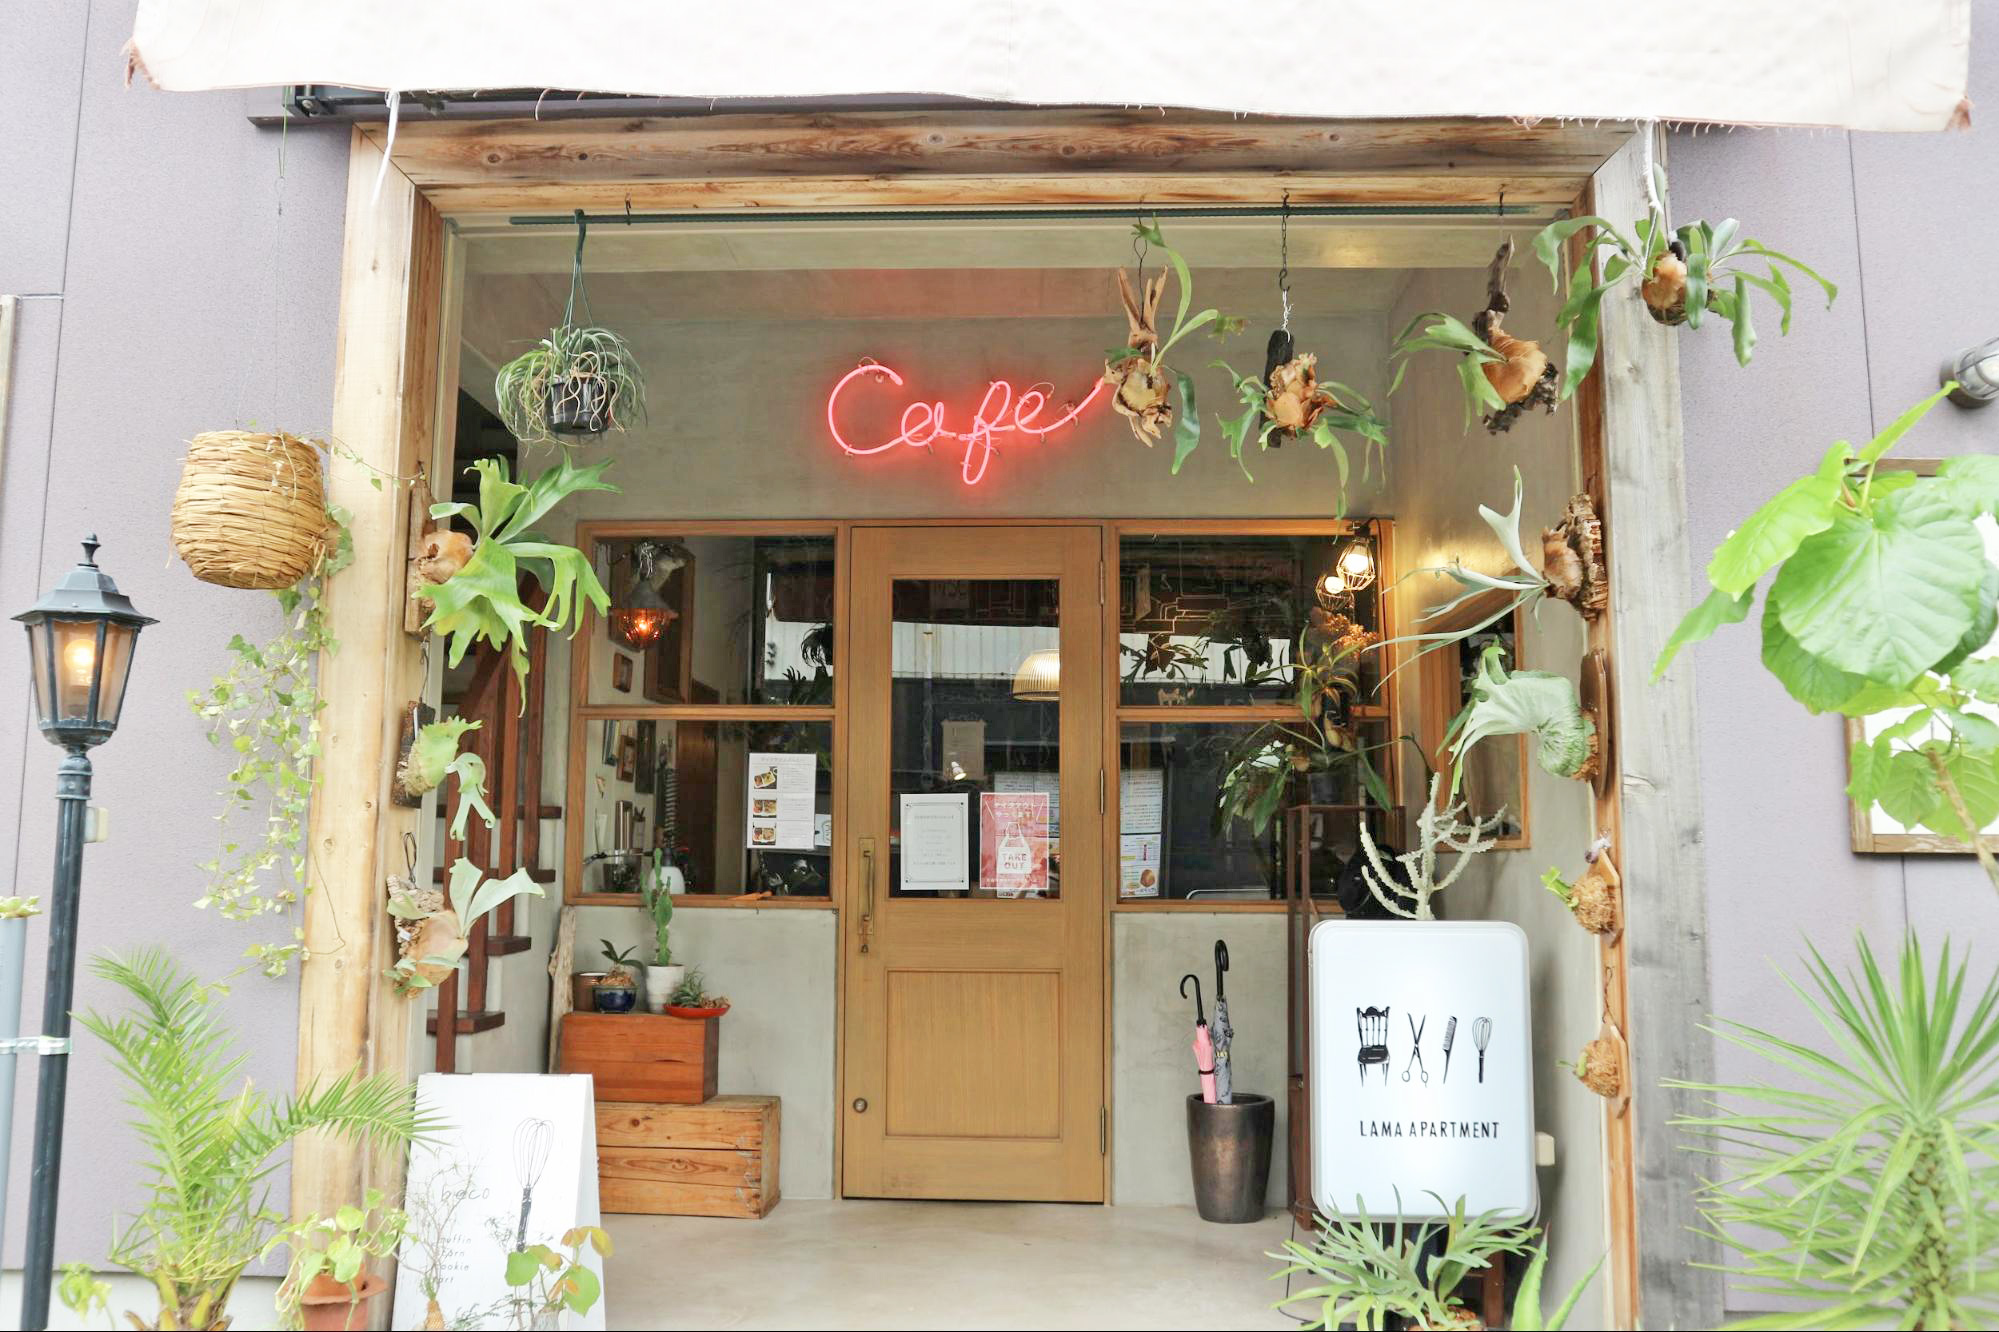 Cafe Lama カフェラマ 店主のこだわりが詰まった 植物に囲まれほっと一息付ける刈谷市のカフェ ライフデザインズ